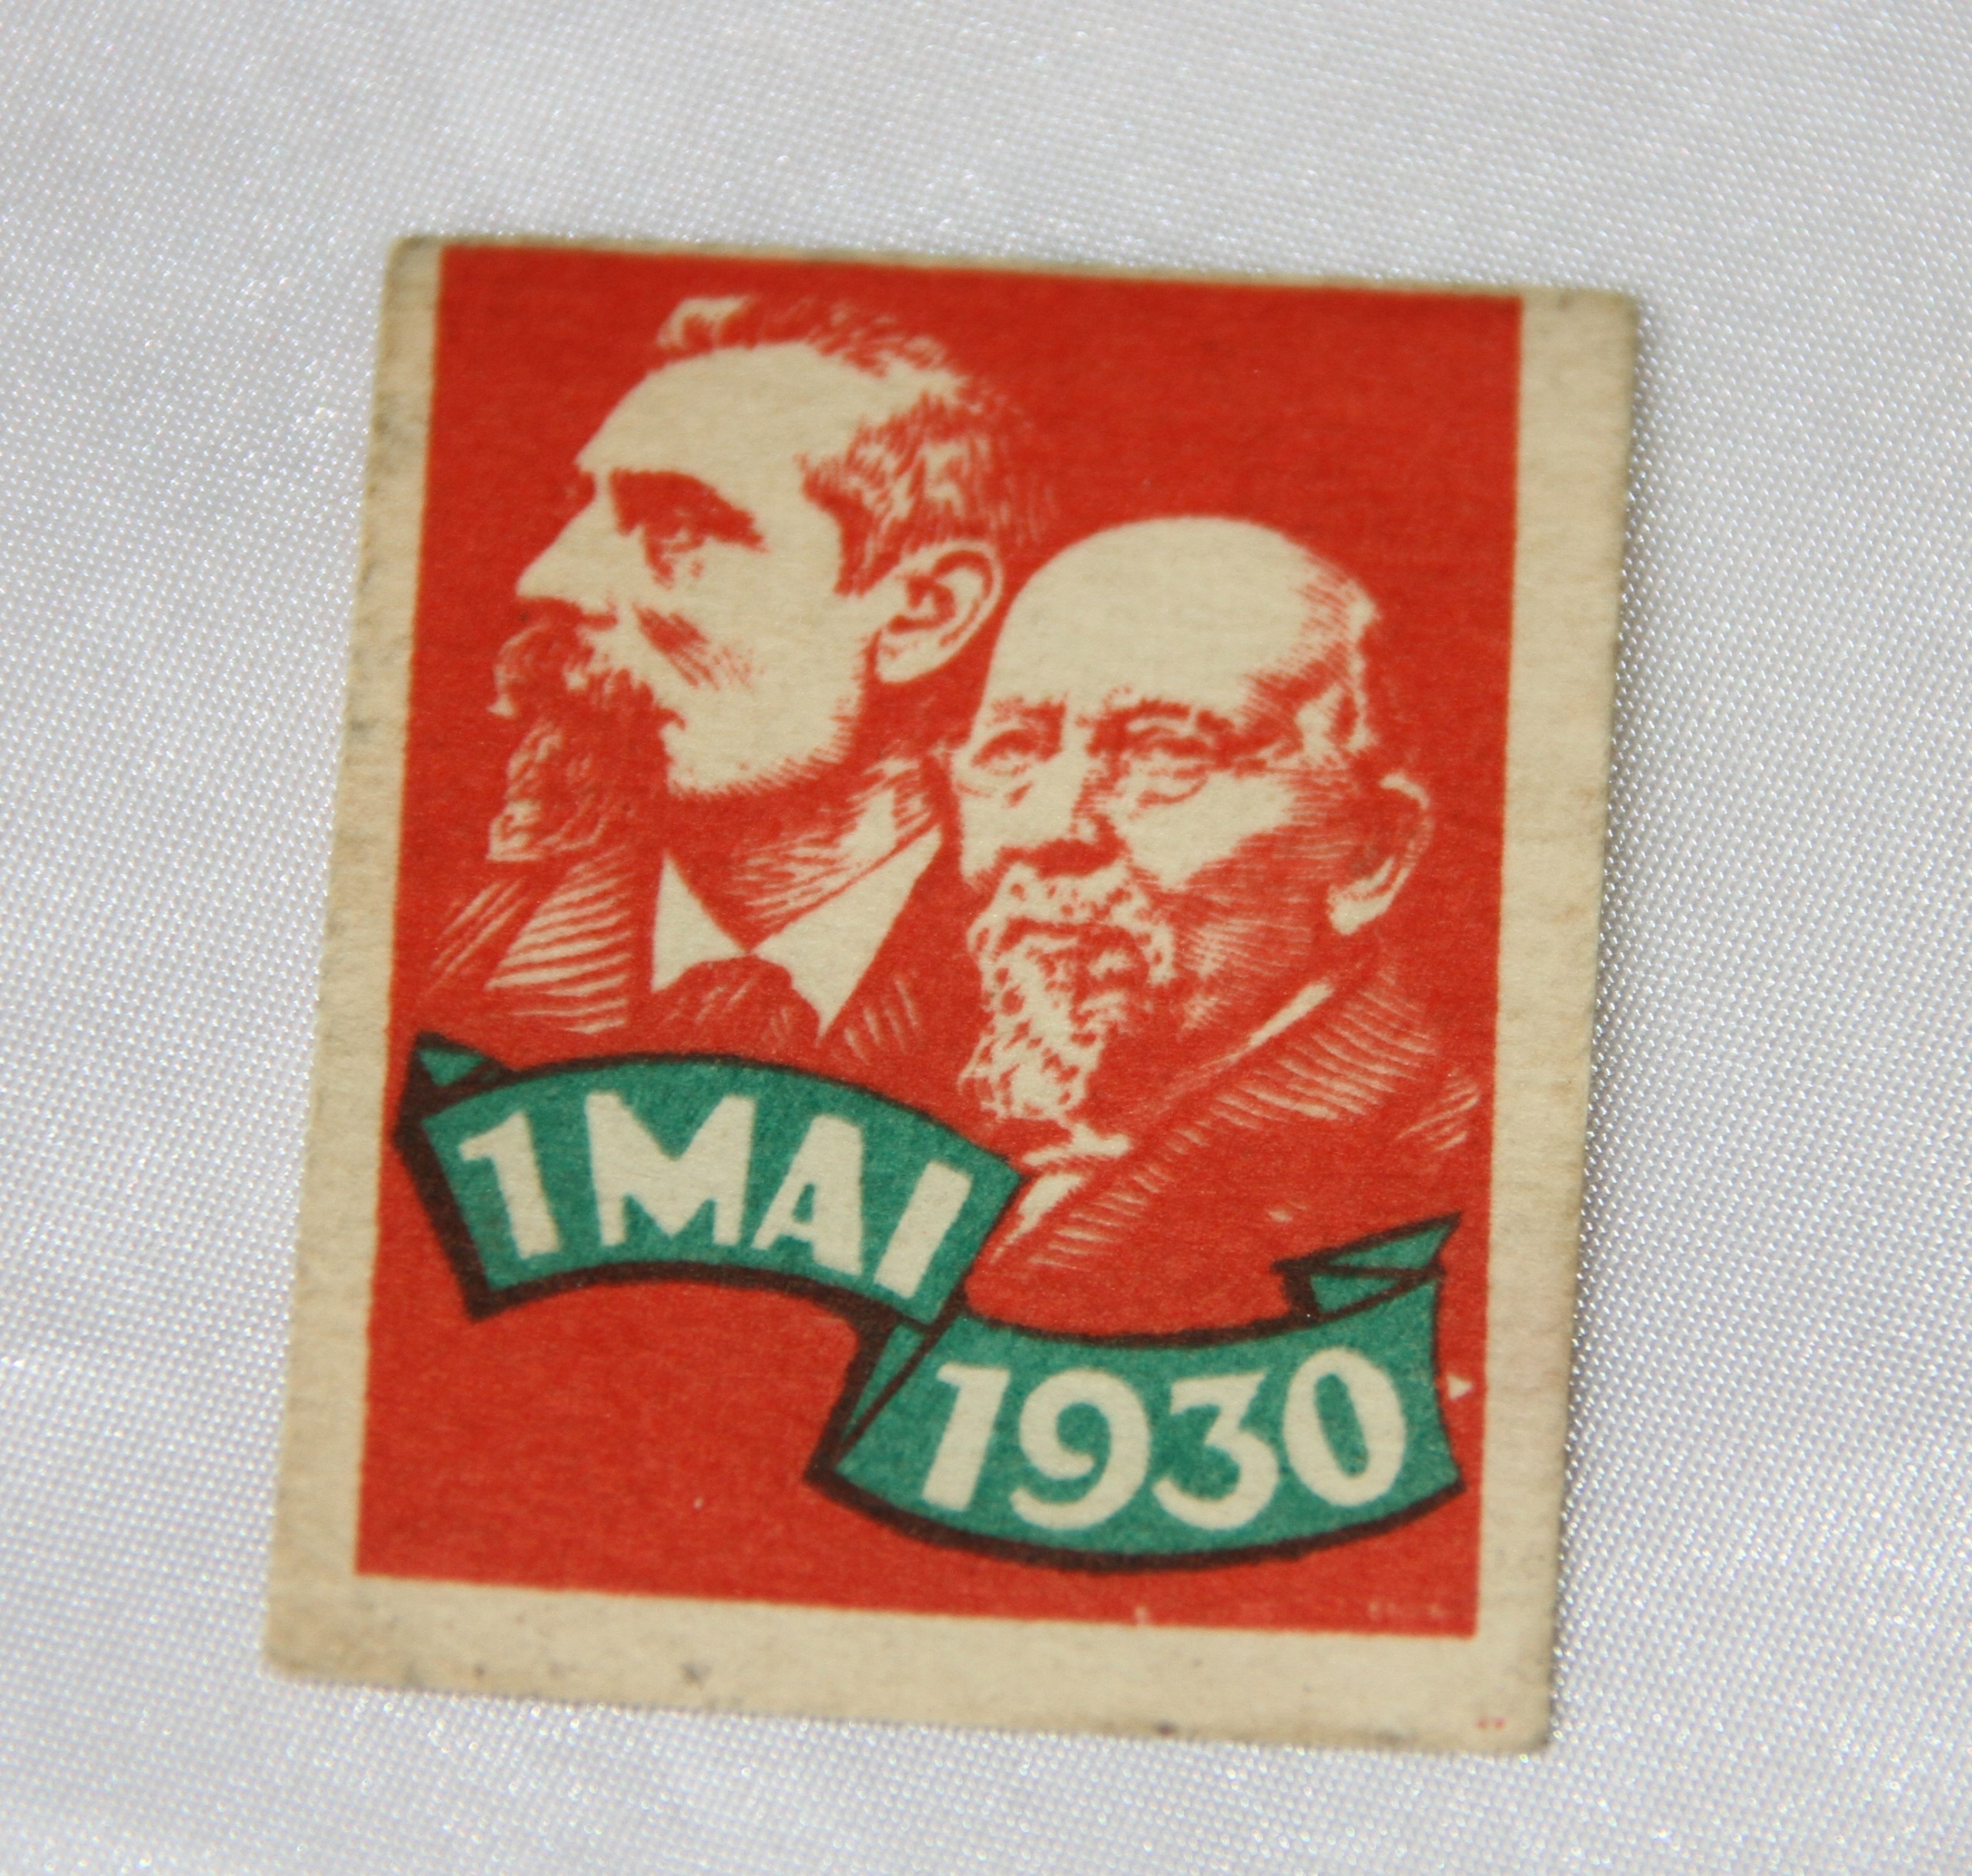 Arbeiderpartiets 1. mai-merke fra 1930